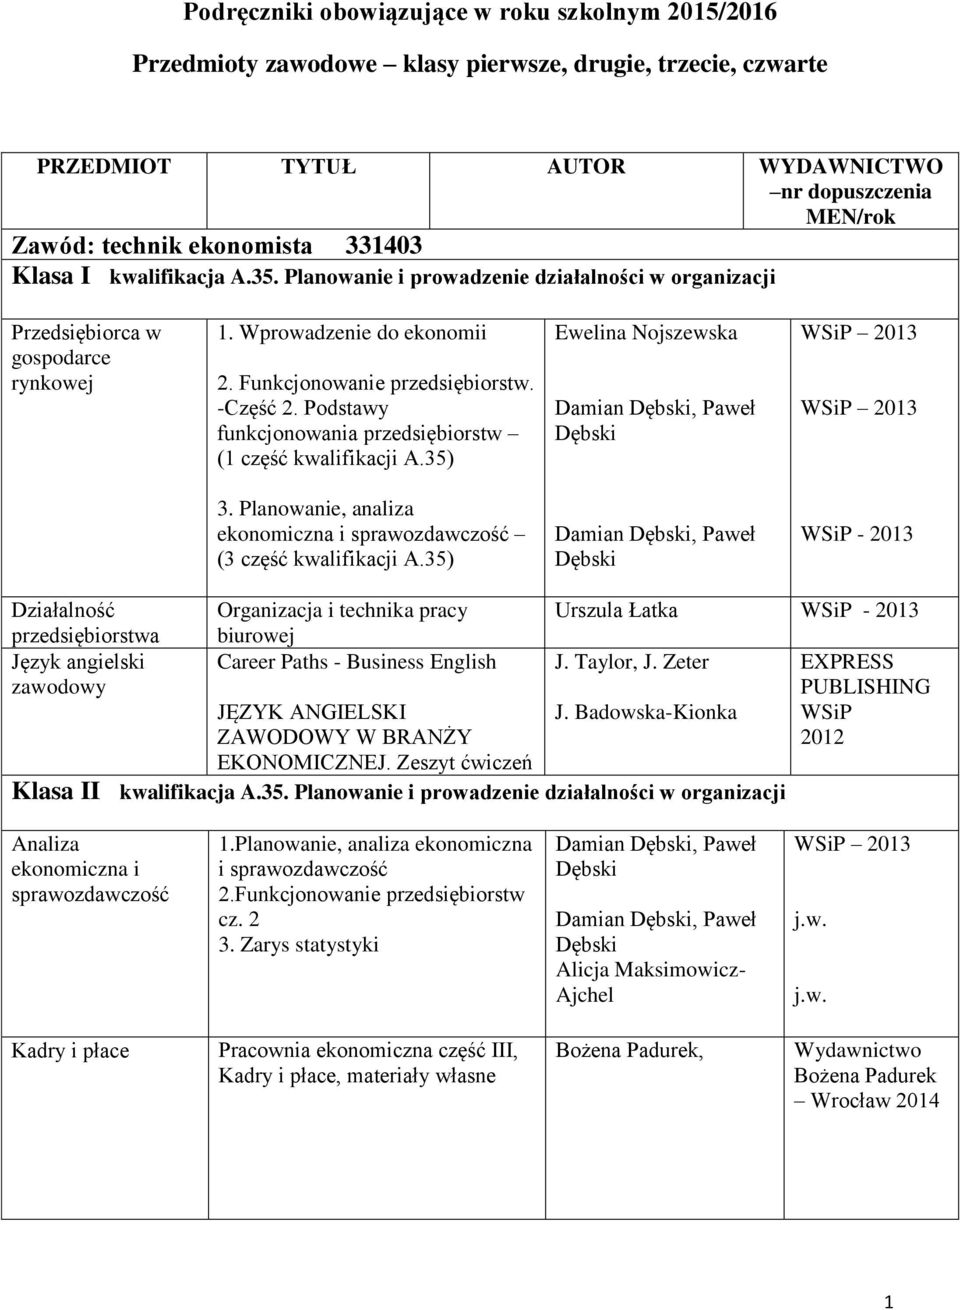 Podstawy funkcjonowania przedsiębiorstw (1 część kwalifikacji A.35) Ewelina Nojszewska Damian Dębski, Paweł Dębski 2013 2013 3.